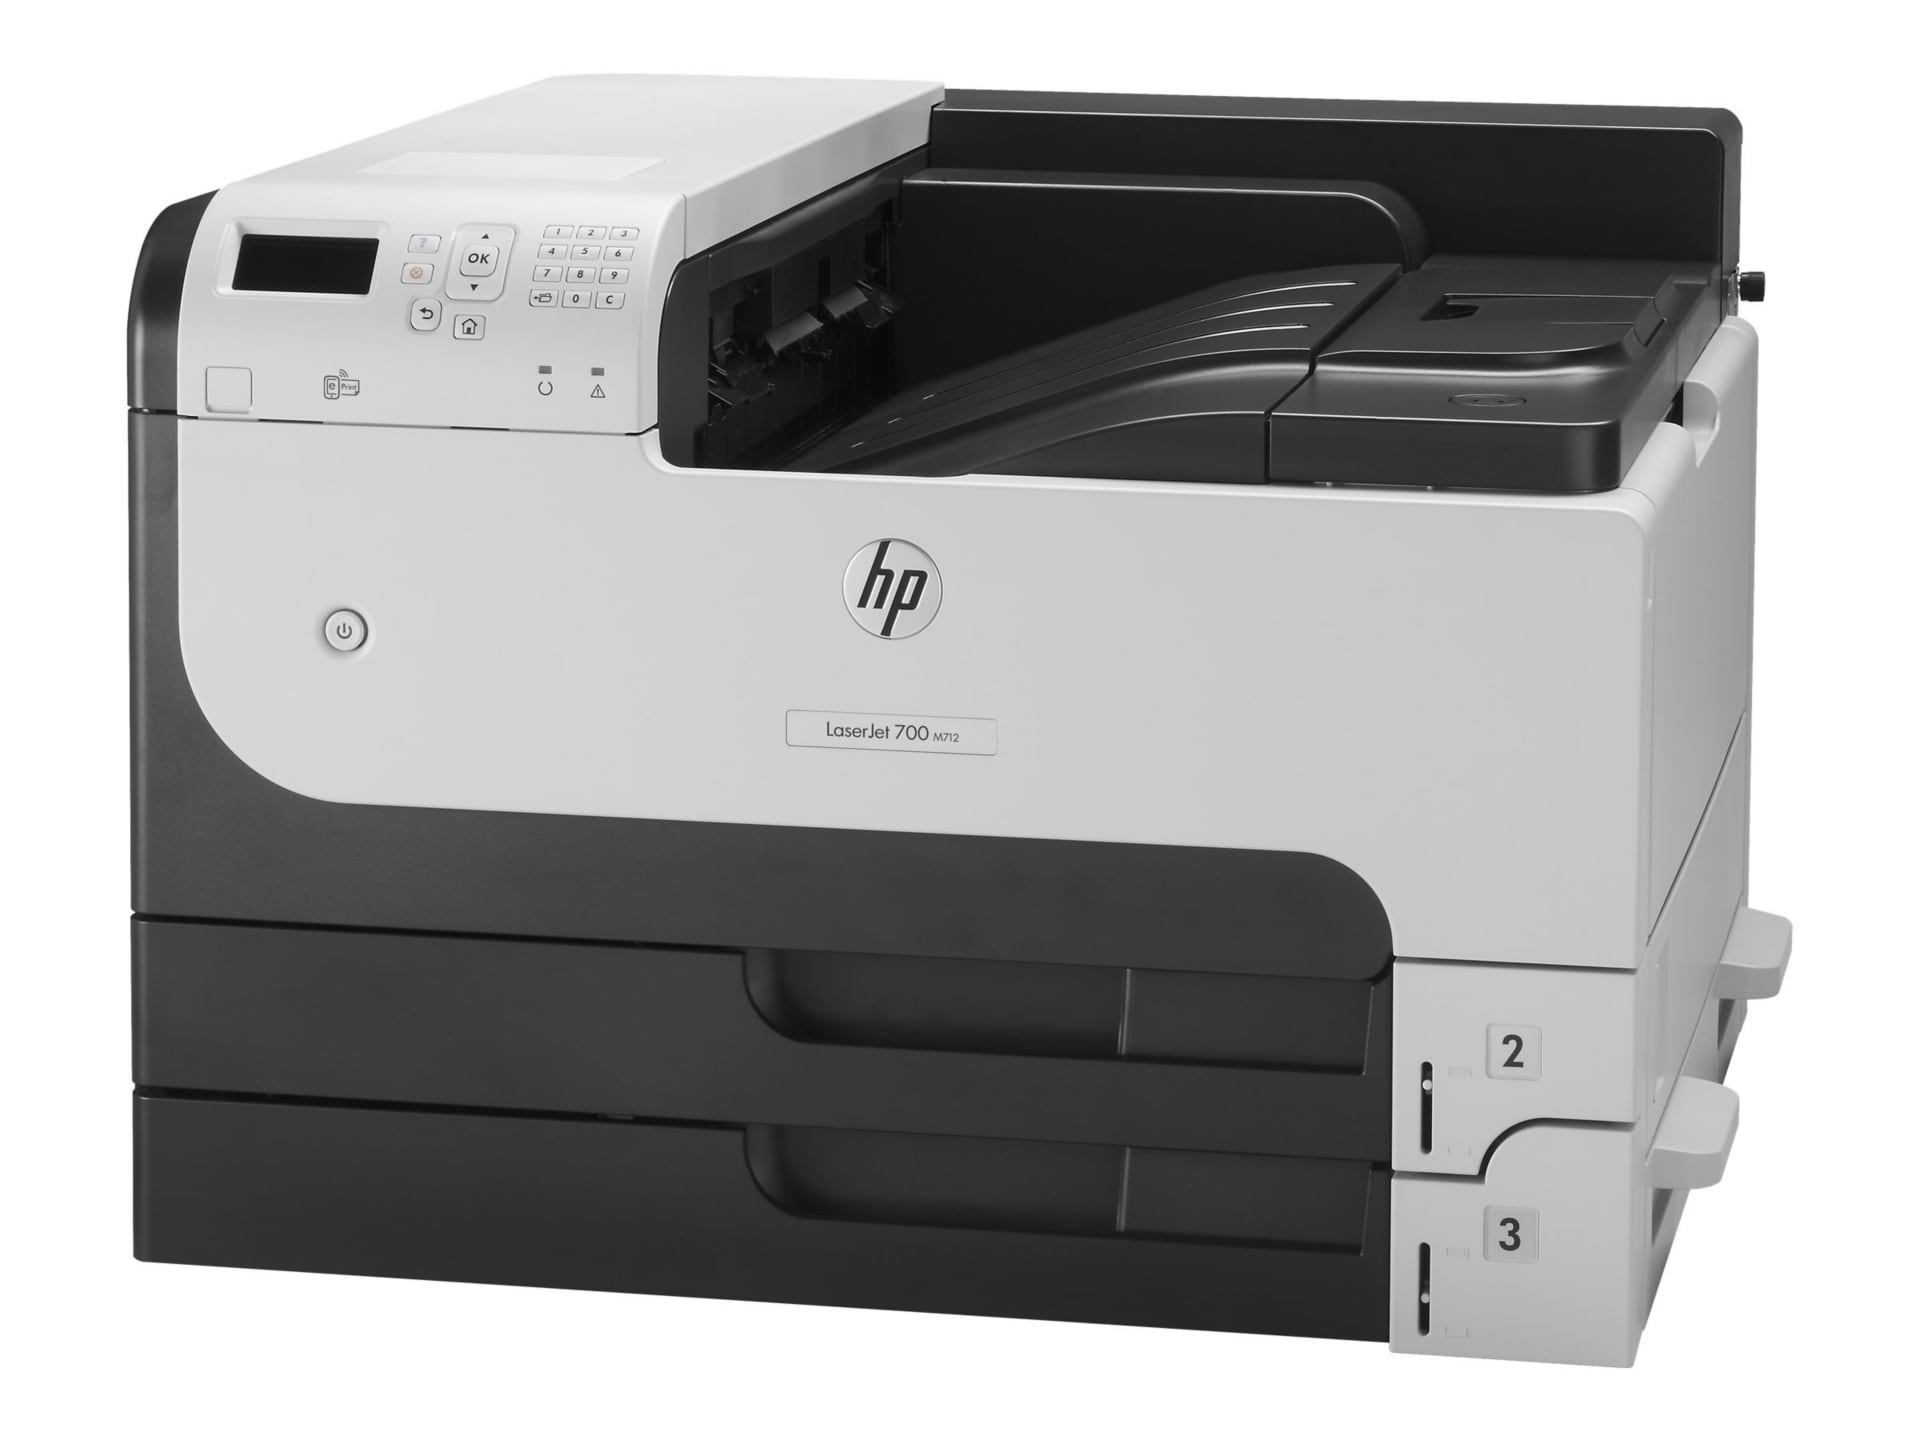 HP LaserJet Enterprise 700 Printer M712n - printer - B/W - laser - CF235A#BGJ Laser Printers - CDW.com